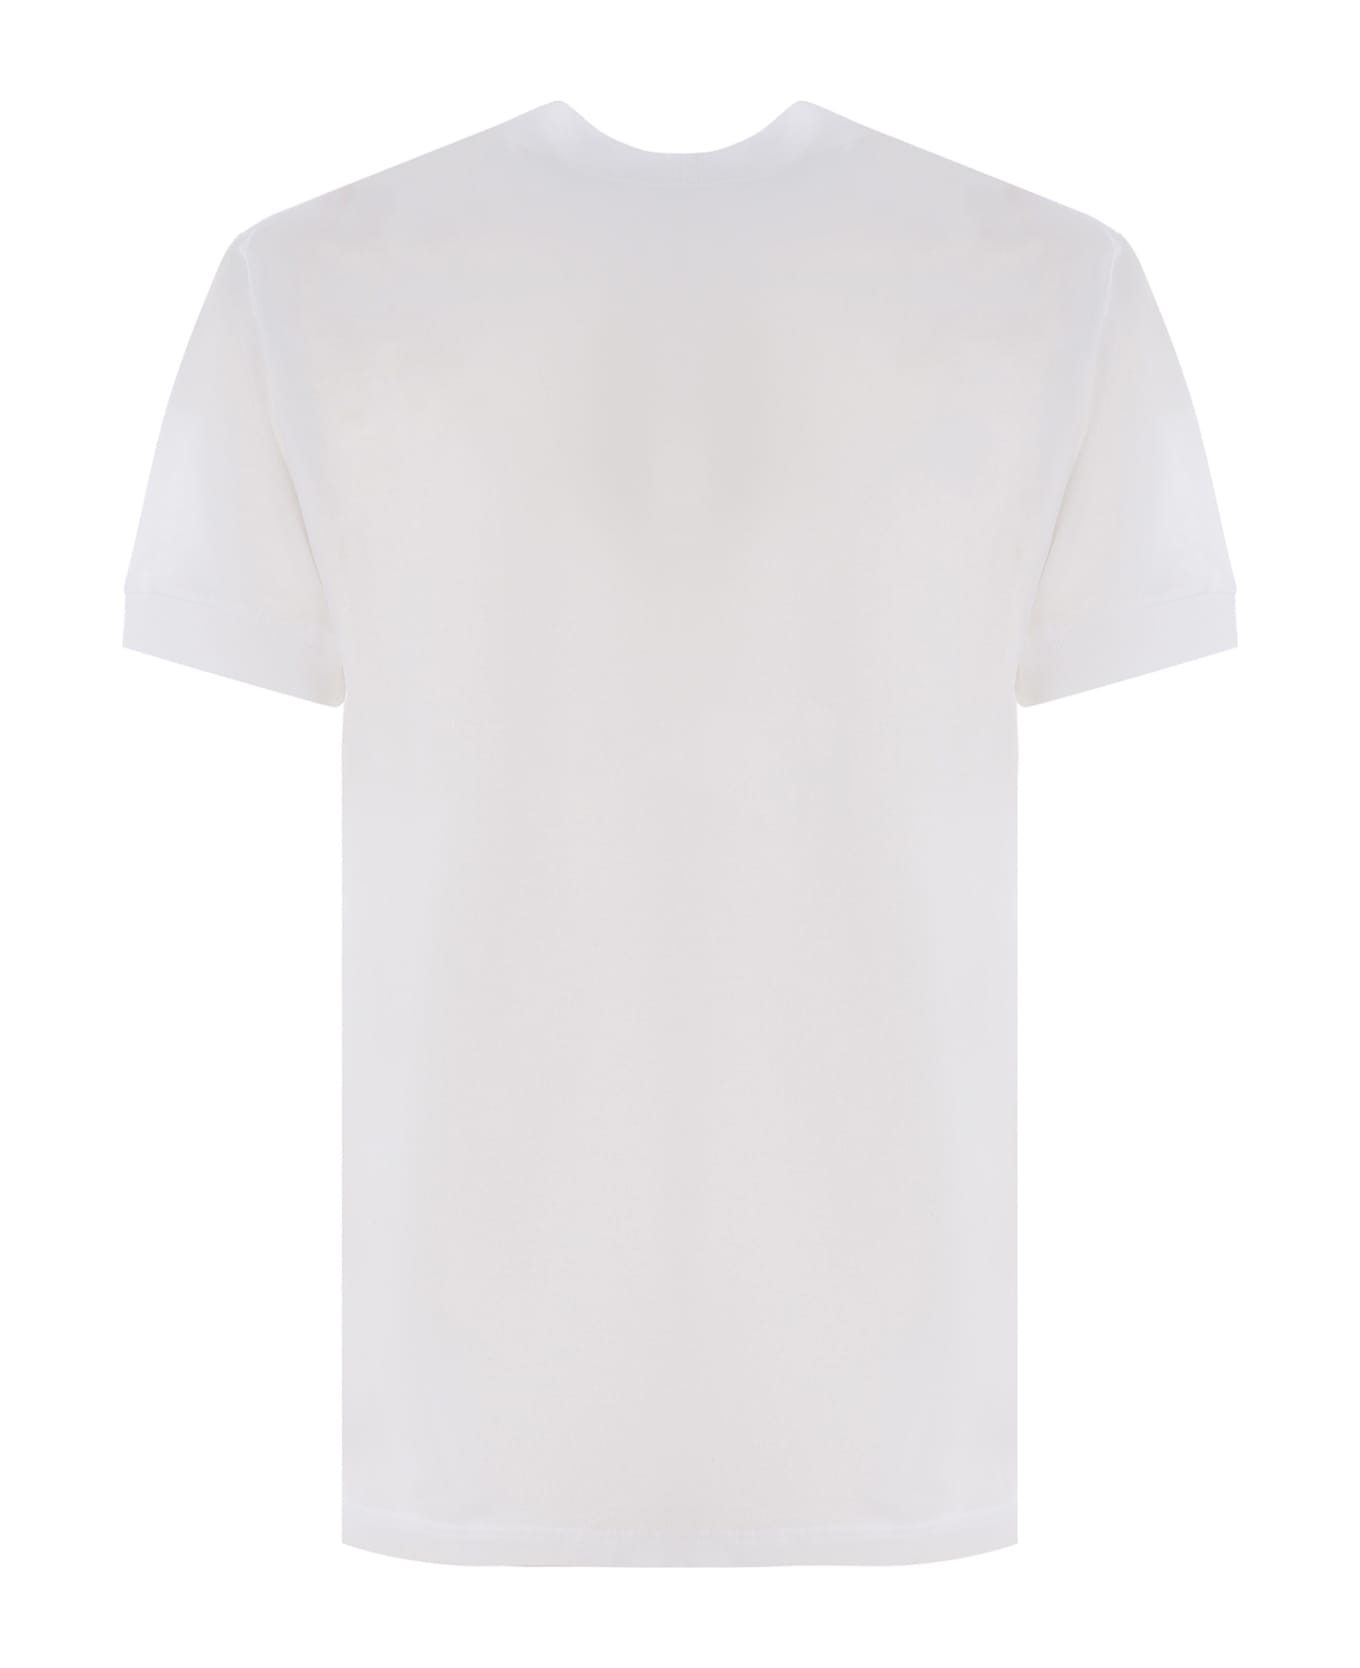 Tagliatore T-shirt Tagliatore Made Of Cotton - Bianco シャツ